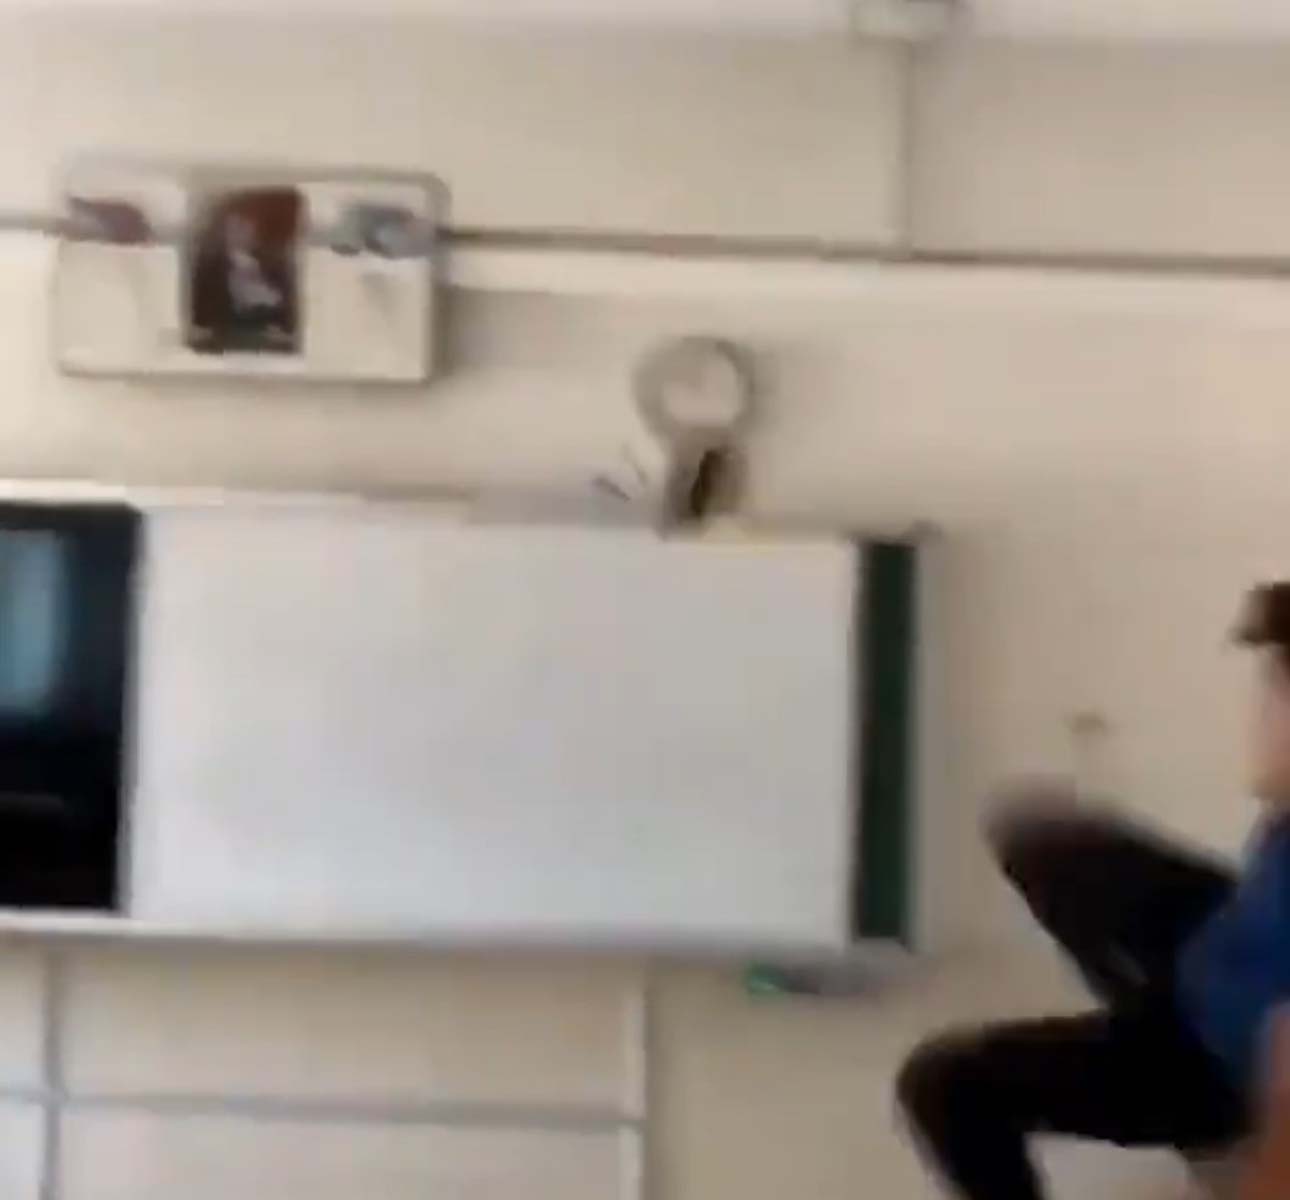 Antalya'nın Serik ilçesindeki bir okulda öğrencilerin Kur'an-ı Kerim'e tekme attığı video tepki çekti. 